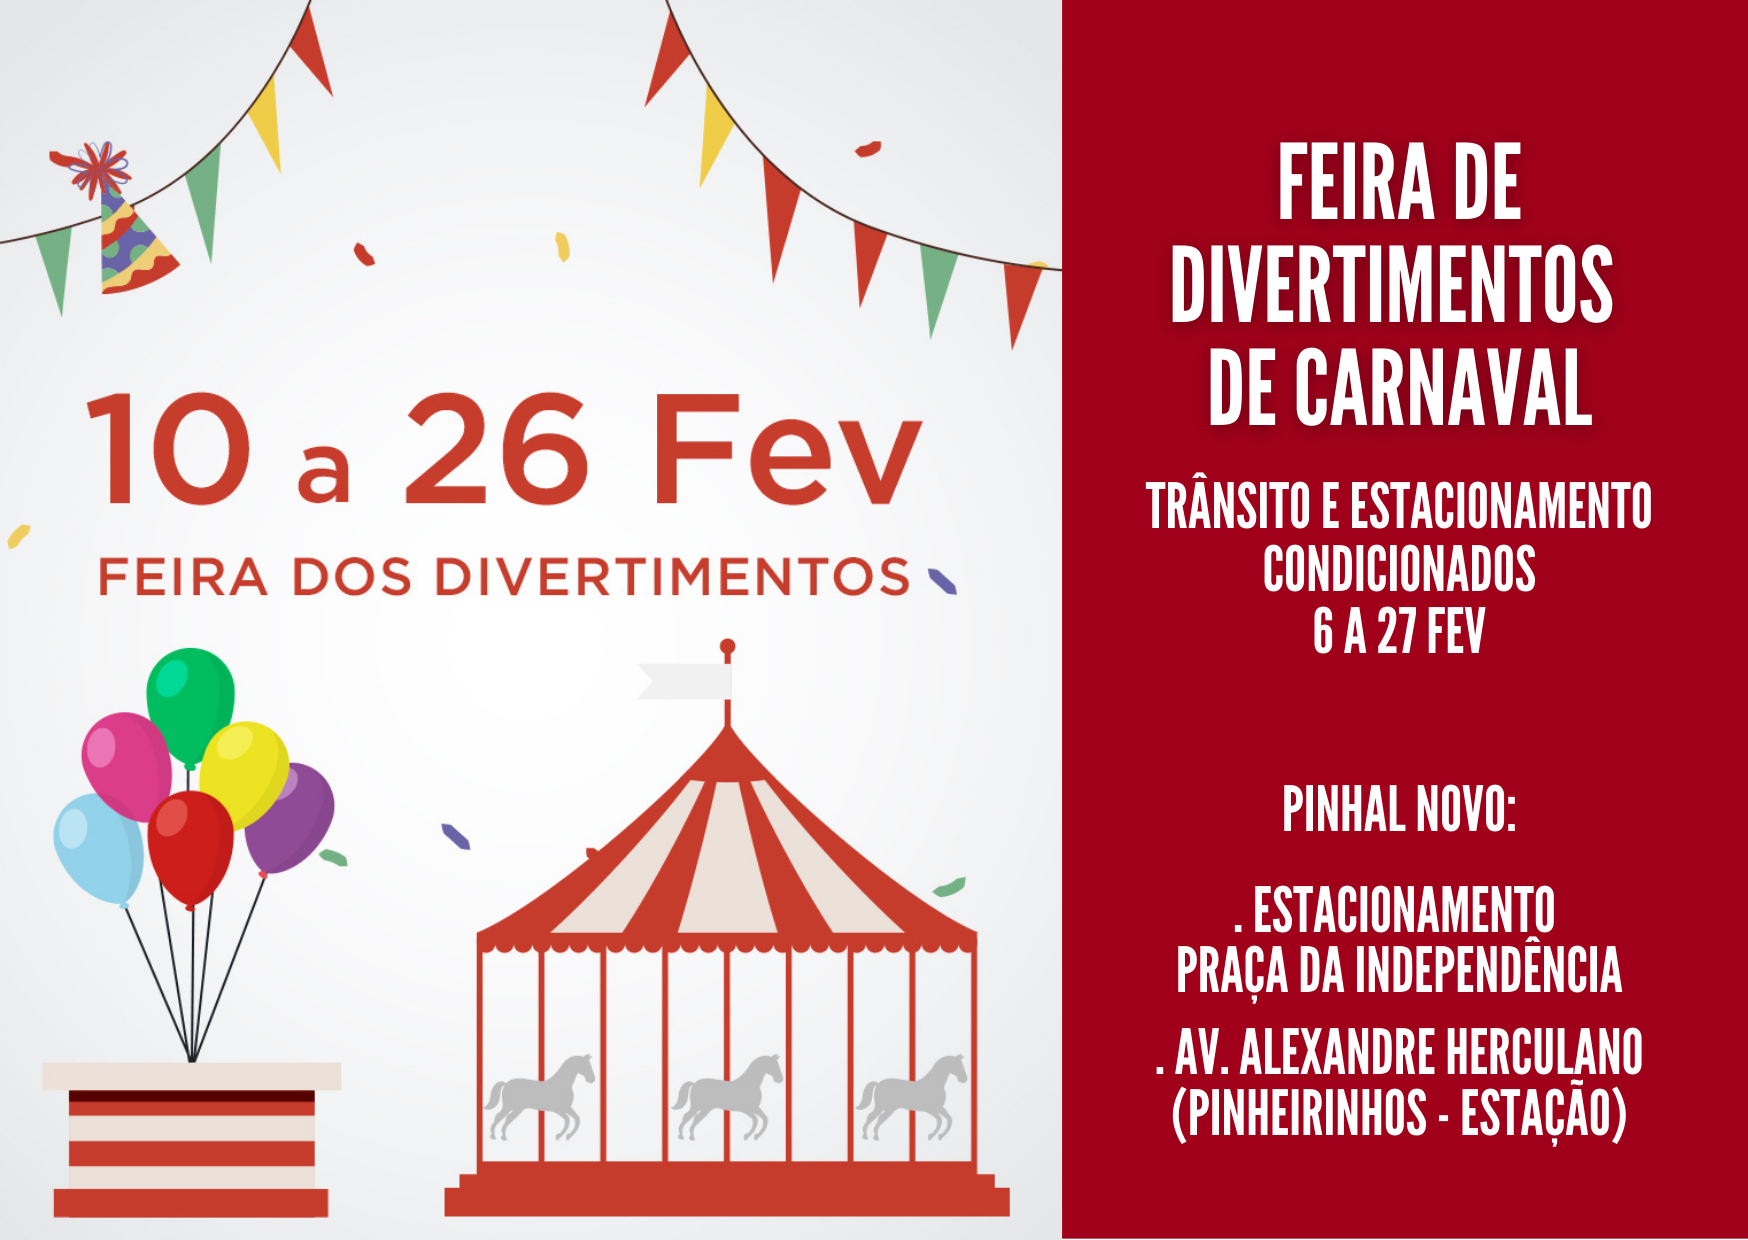 Feira de Divertimentos de Carnaval – Pinhal Novo Trânsito e estacionamento condicionados – 6 a 27...